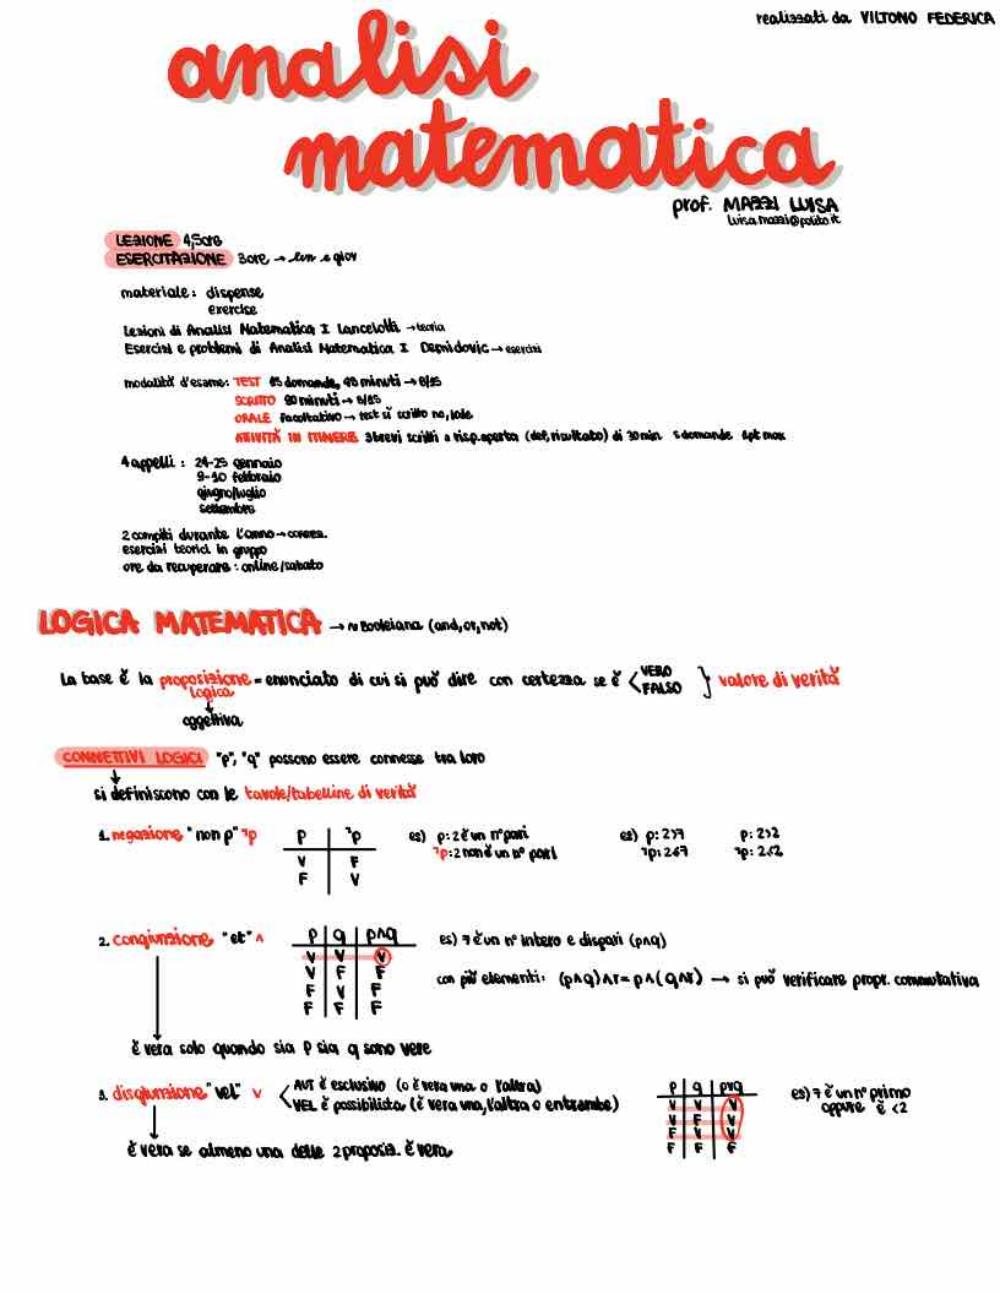 Appunti completi di ANALISI MATEMATICA 1 - Politecnico Torino